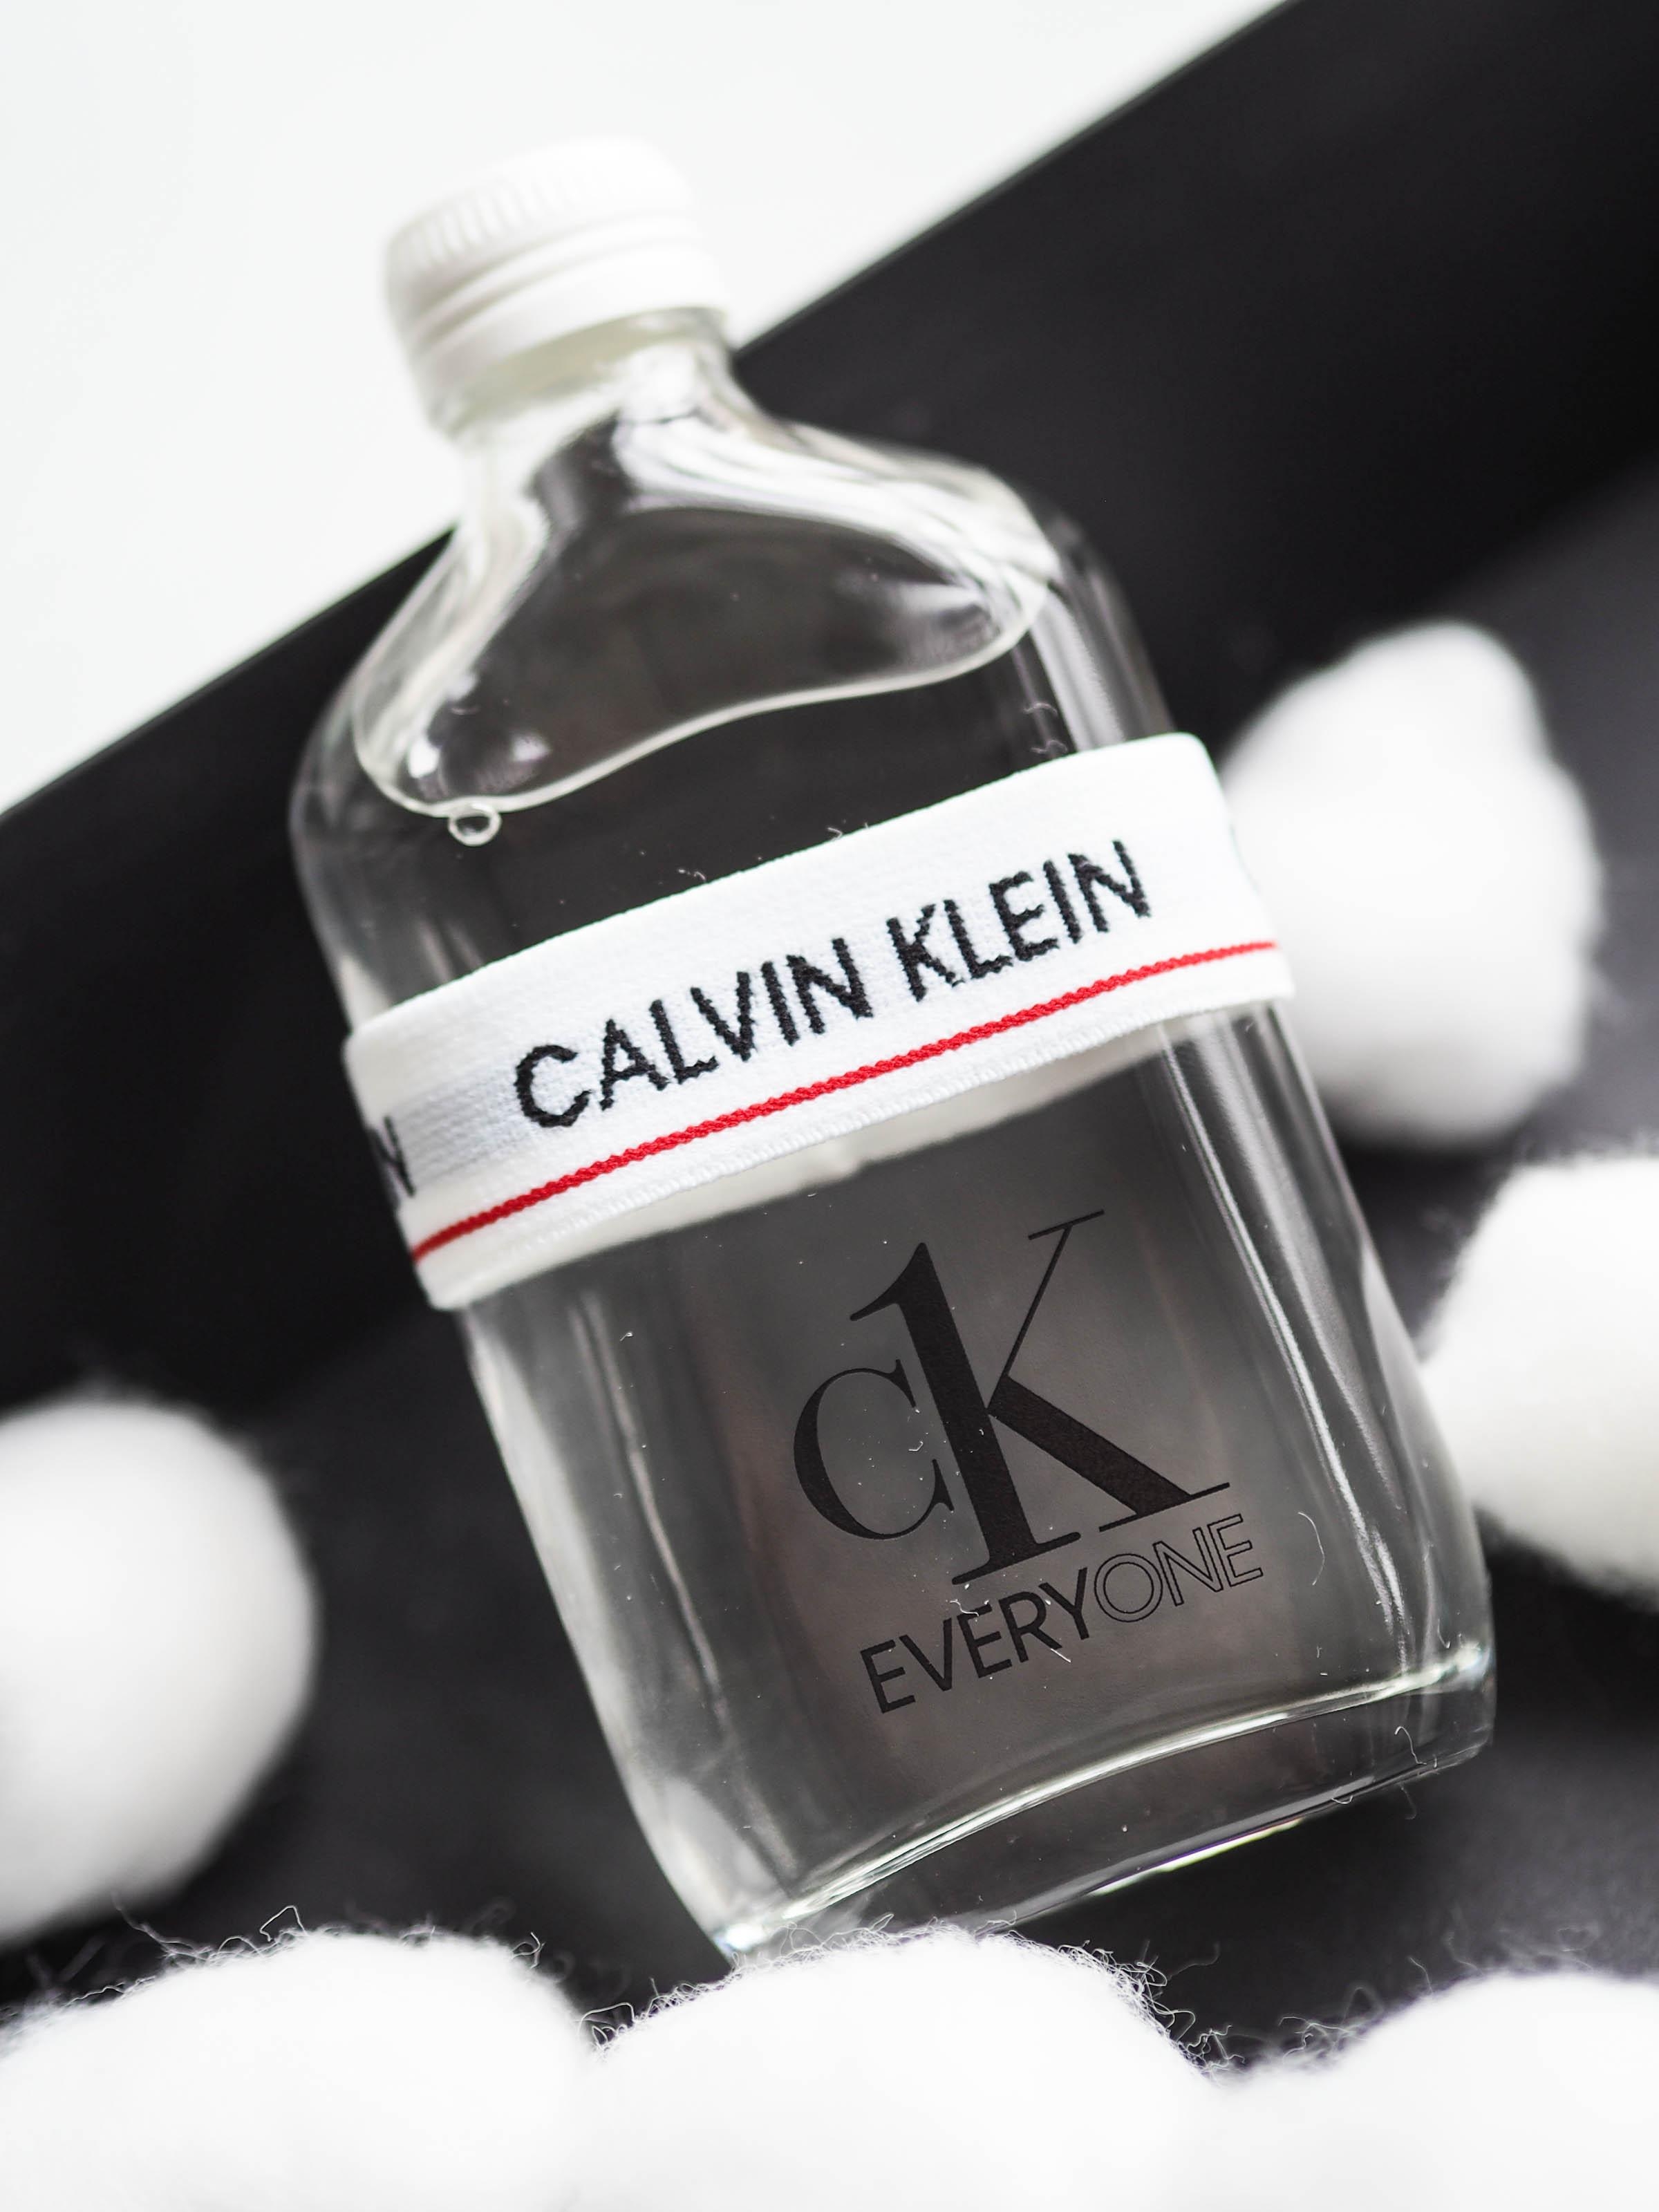 Unisex, clean & nachhaltig verpackt: Wir lieben "Every One" von Calvin Klein #beautylieblinge #calvinklein